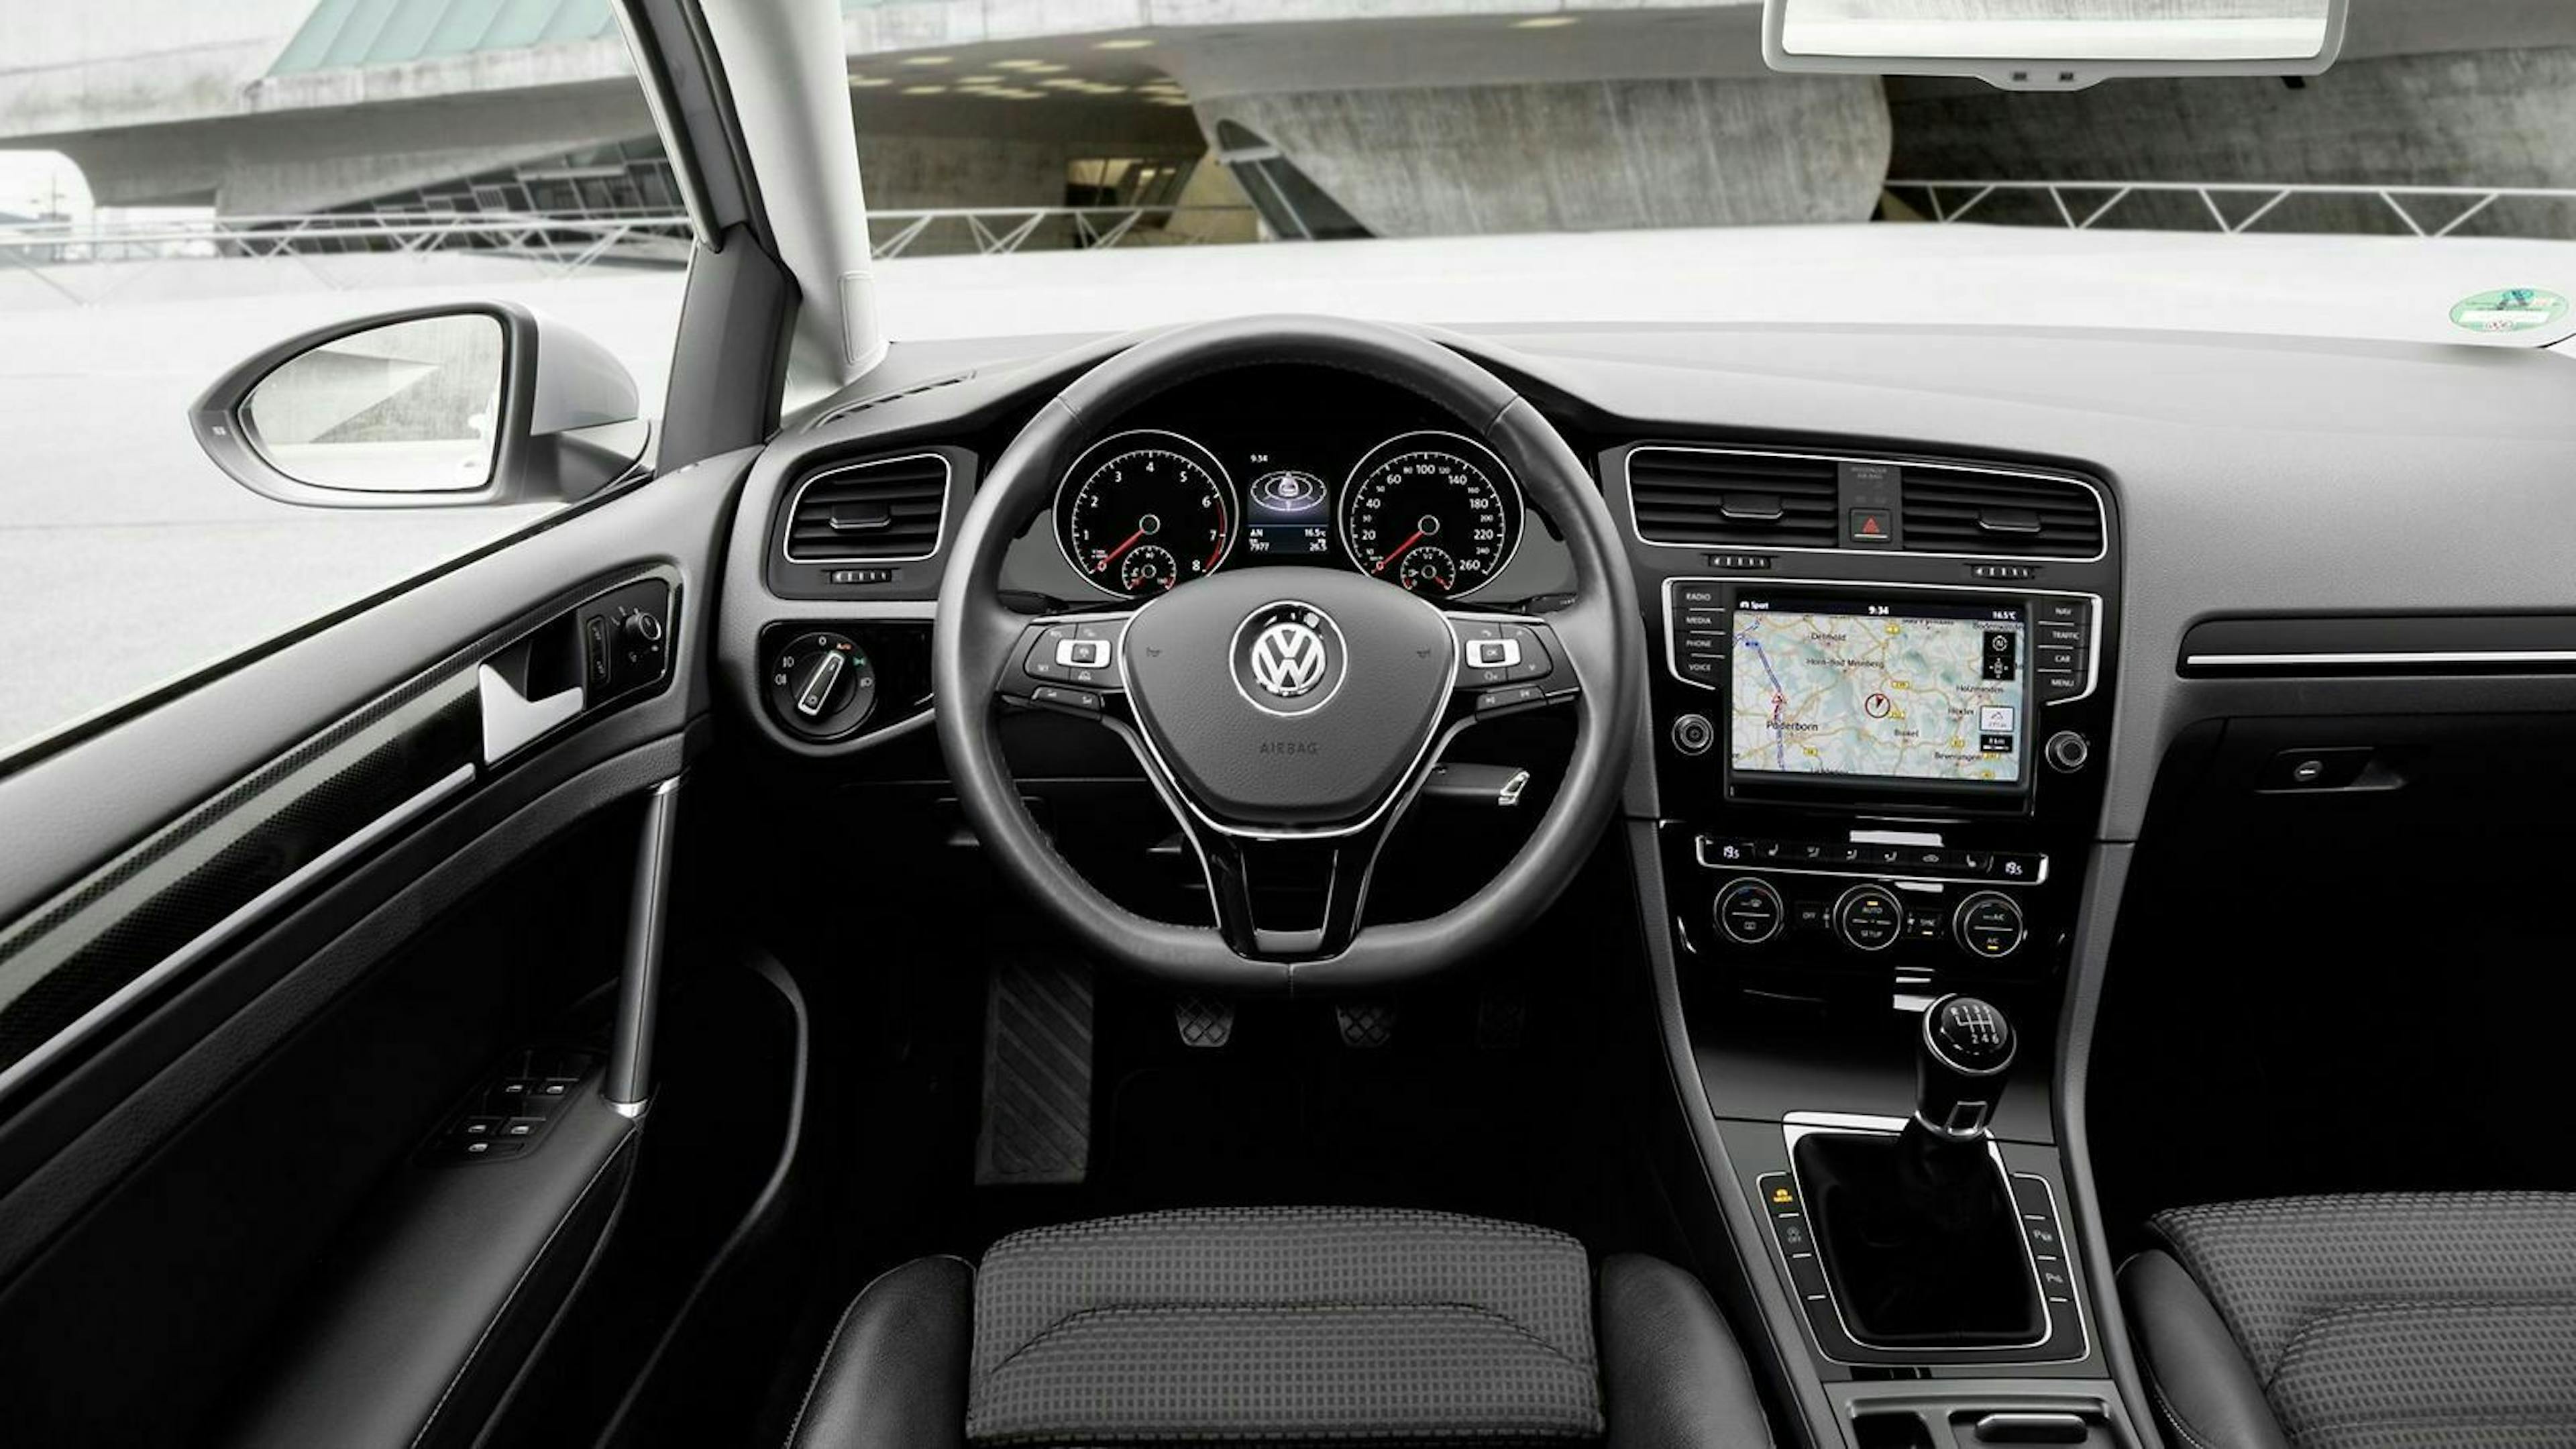 Zu sehen ist das Cockpit des VW Golf 7